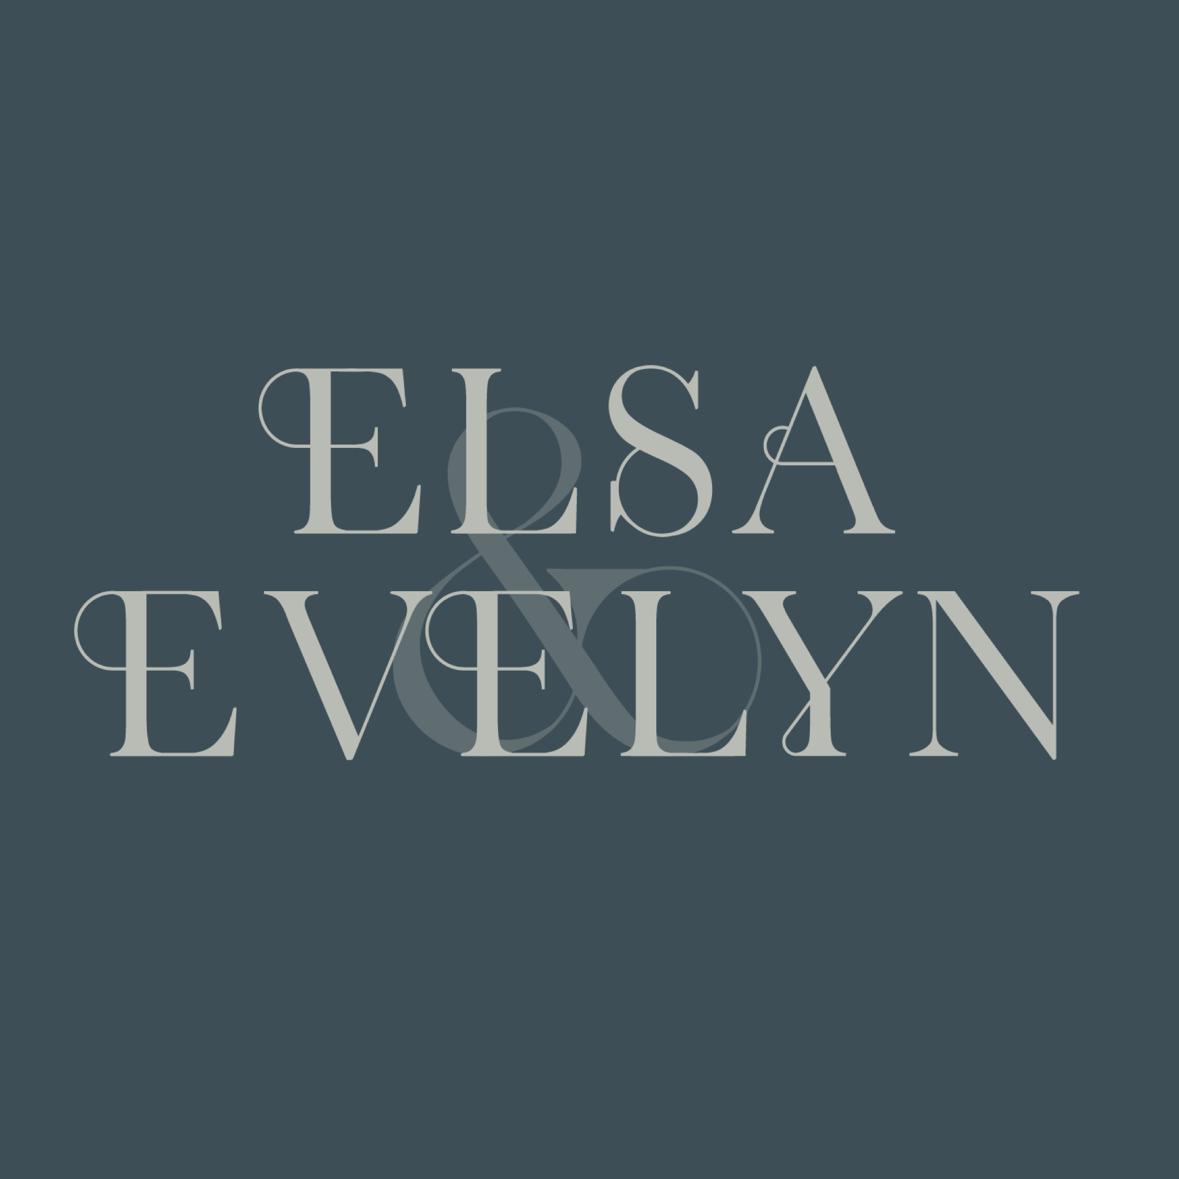 Elsa + Evelyn's images